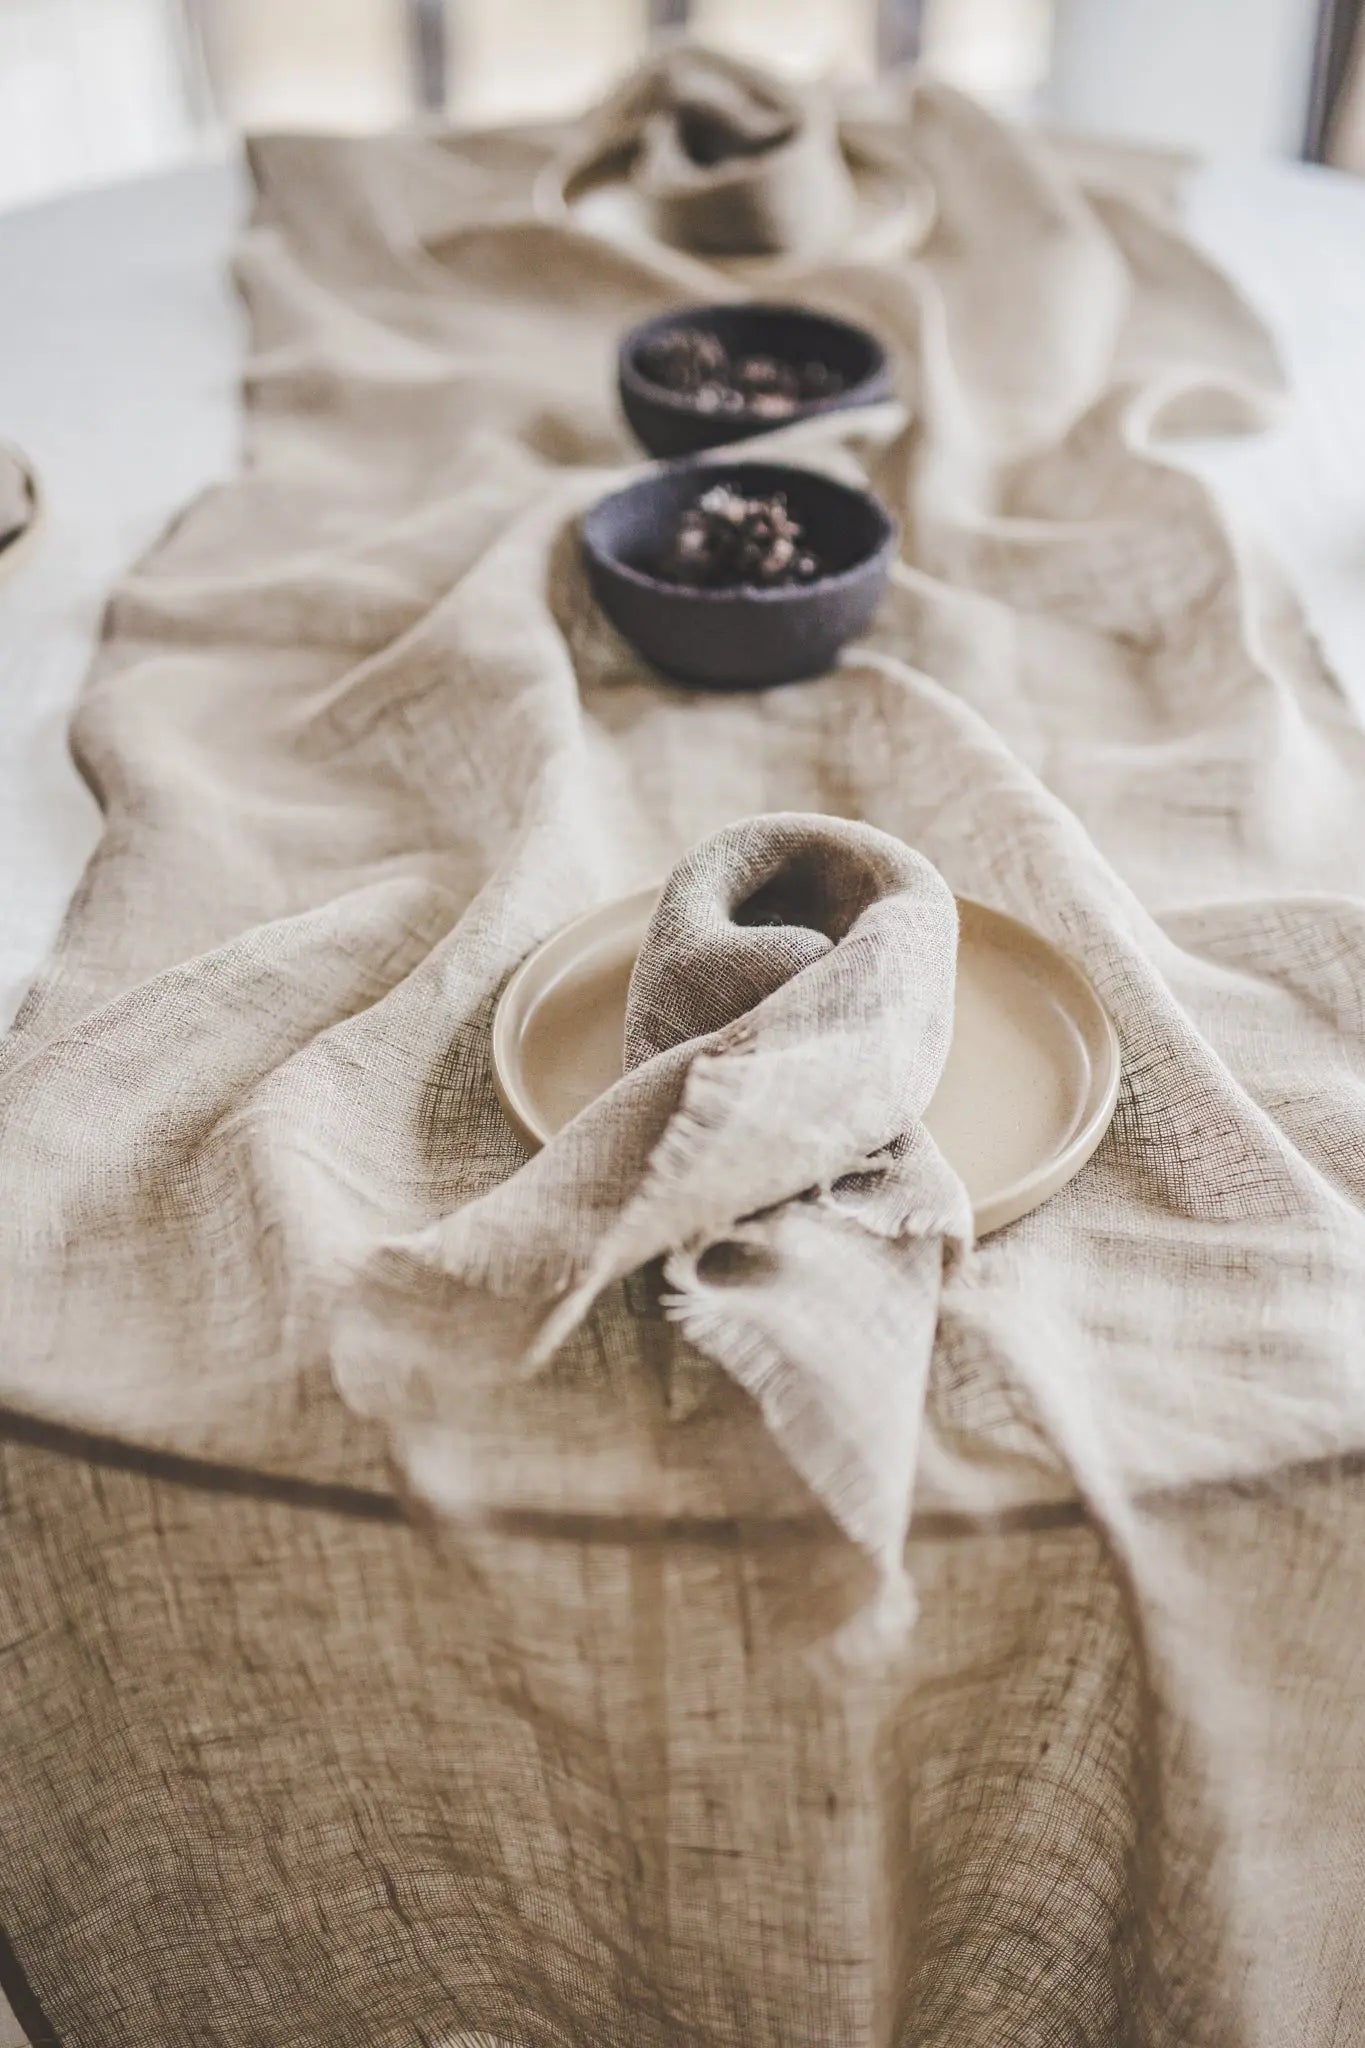 Gauze Linen Table Runner in Beige Natural Flax Color - Epic Linen luxury linen